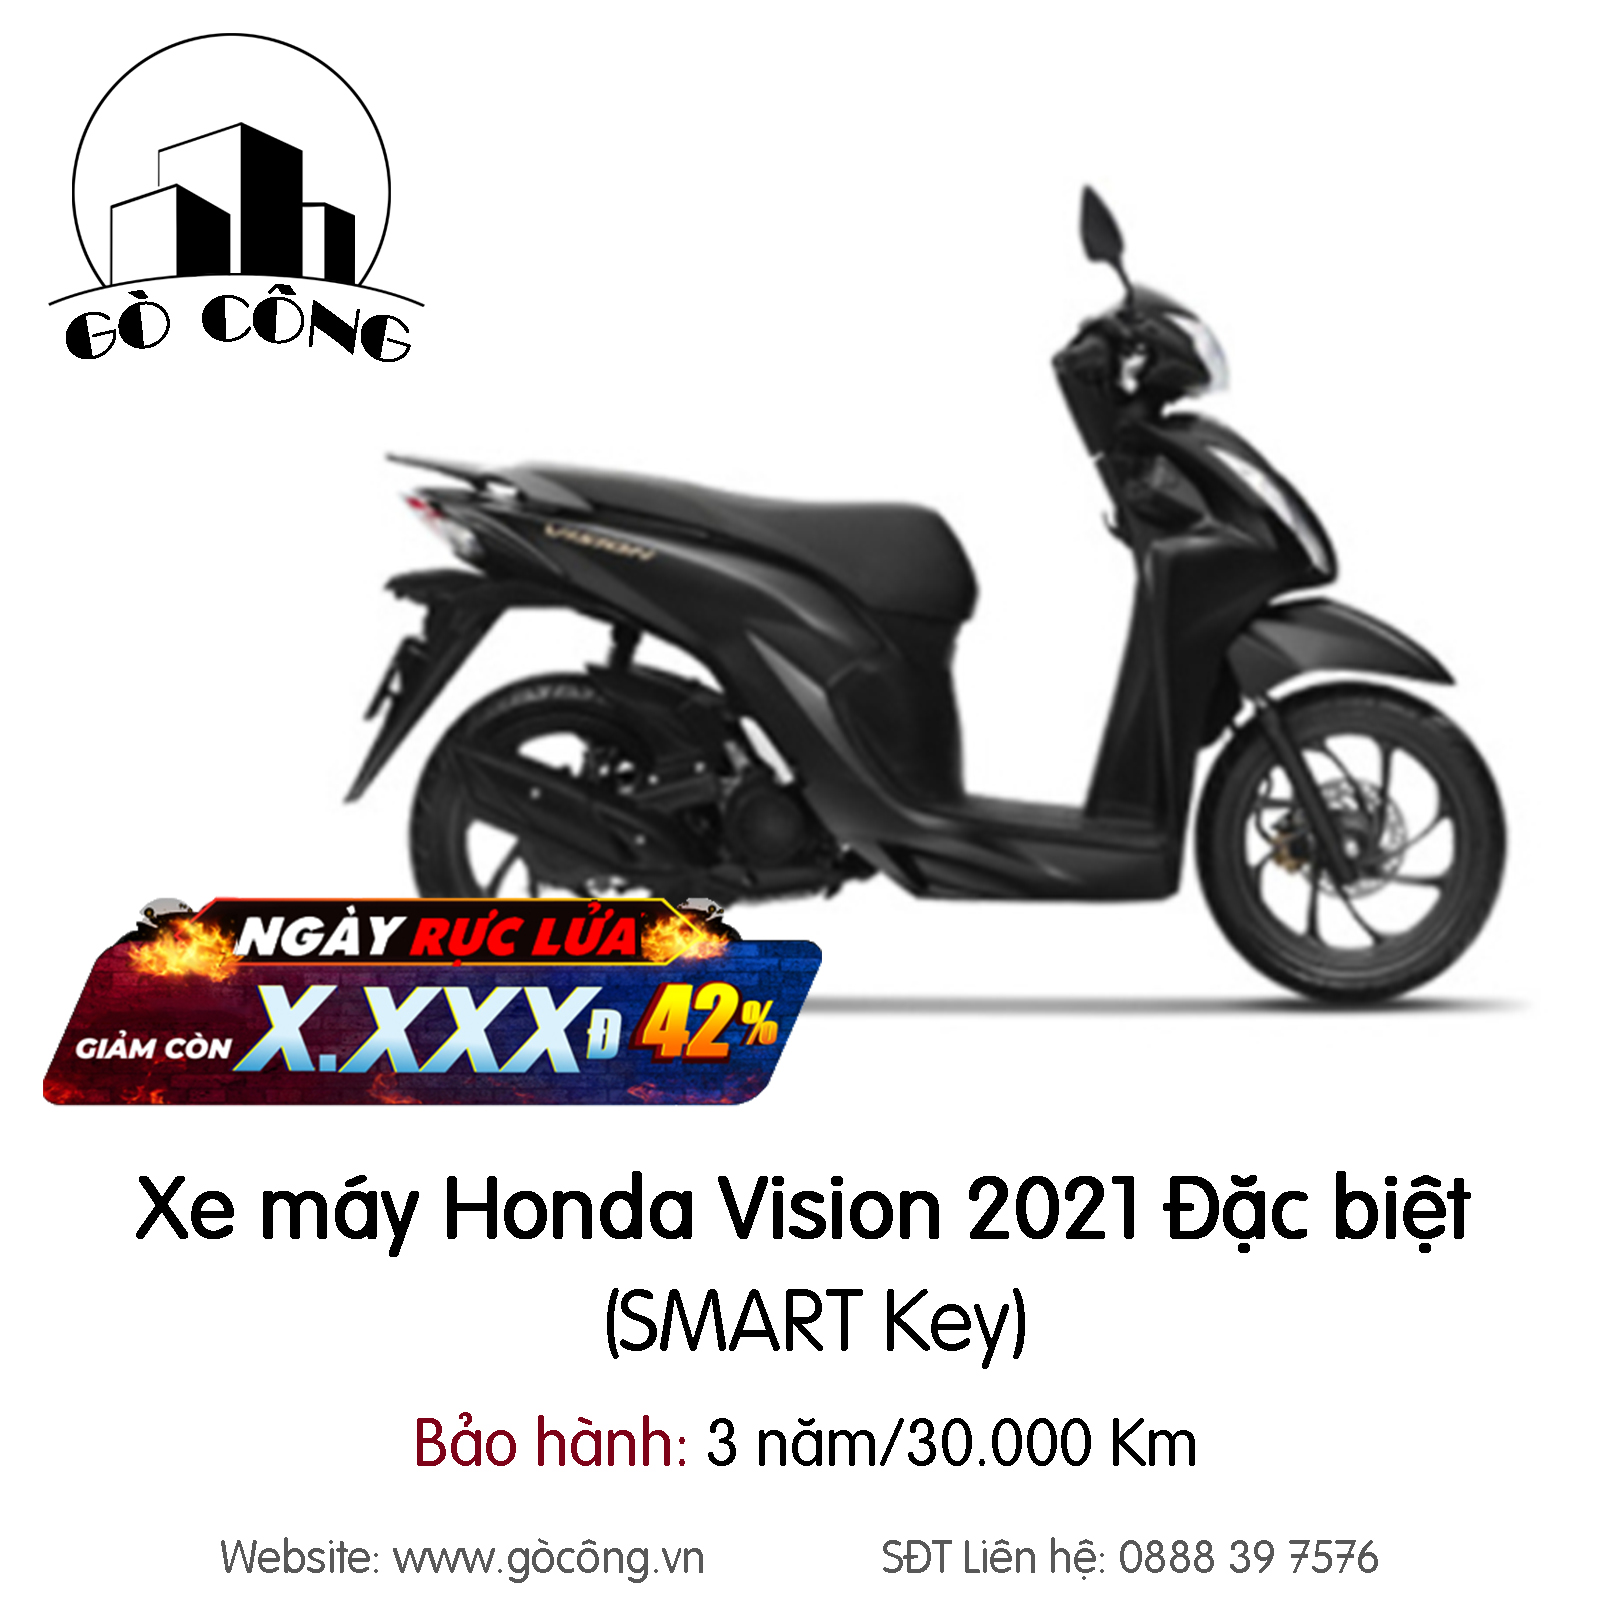 Cách tính giá bao giấy Honda Vision 2021